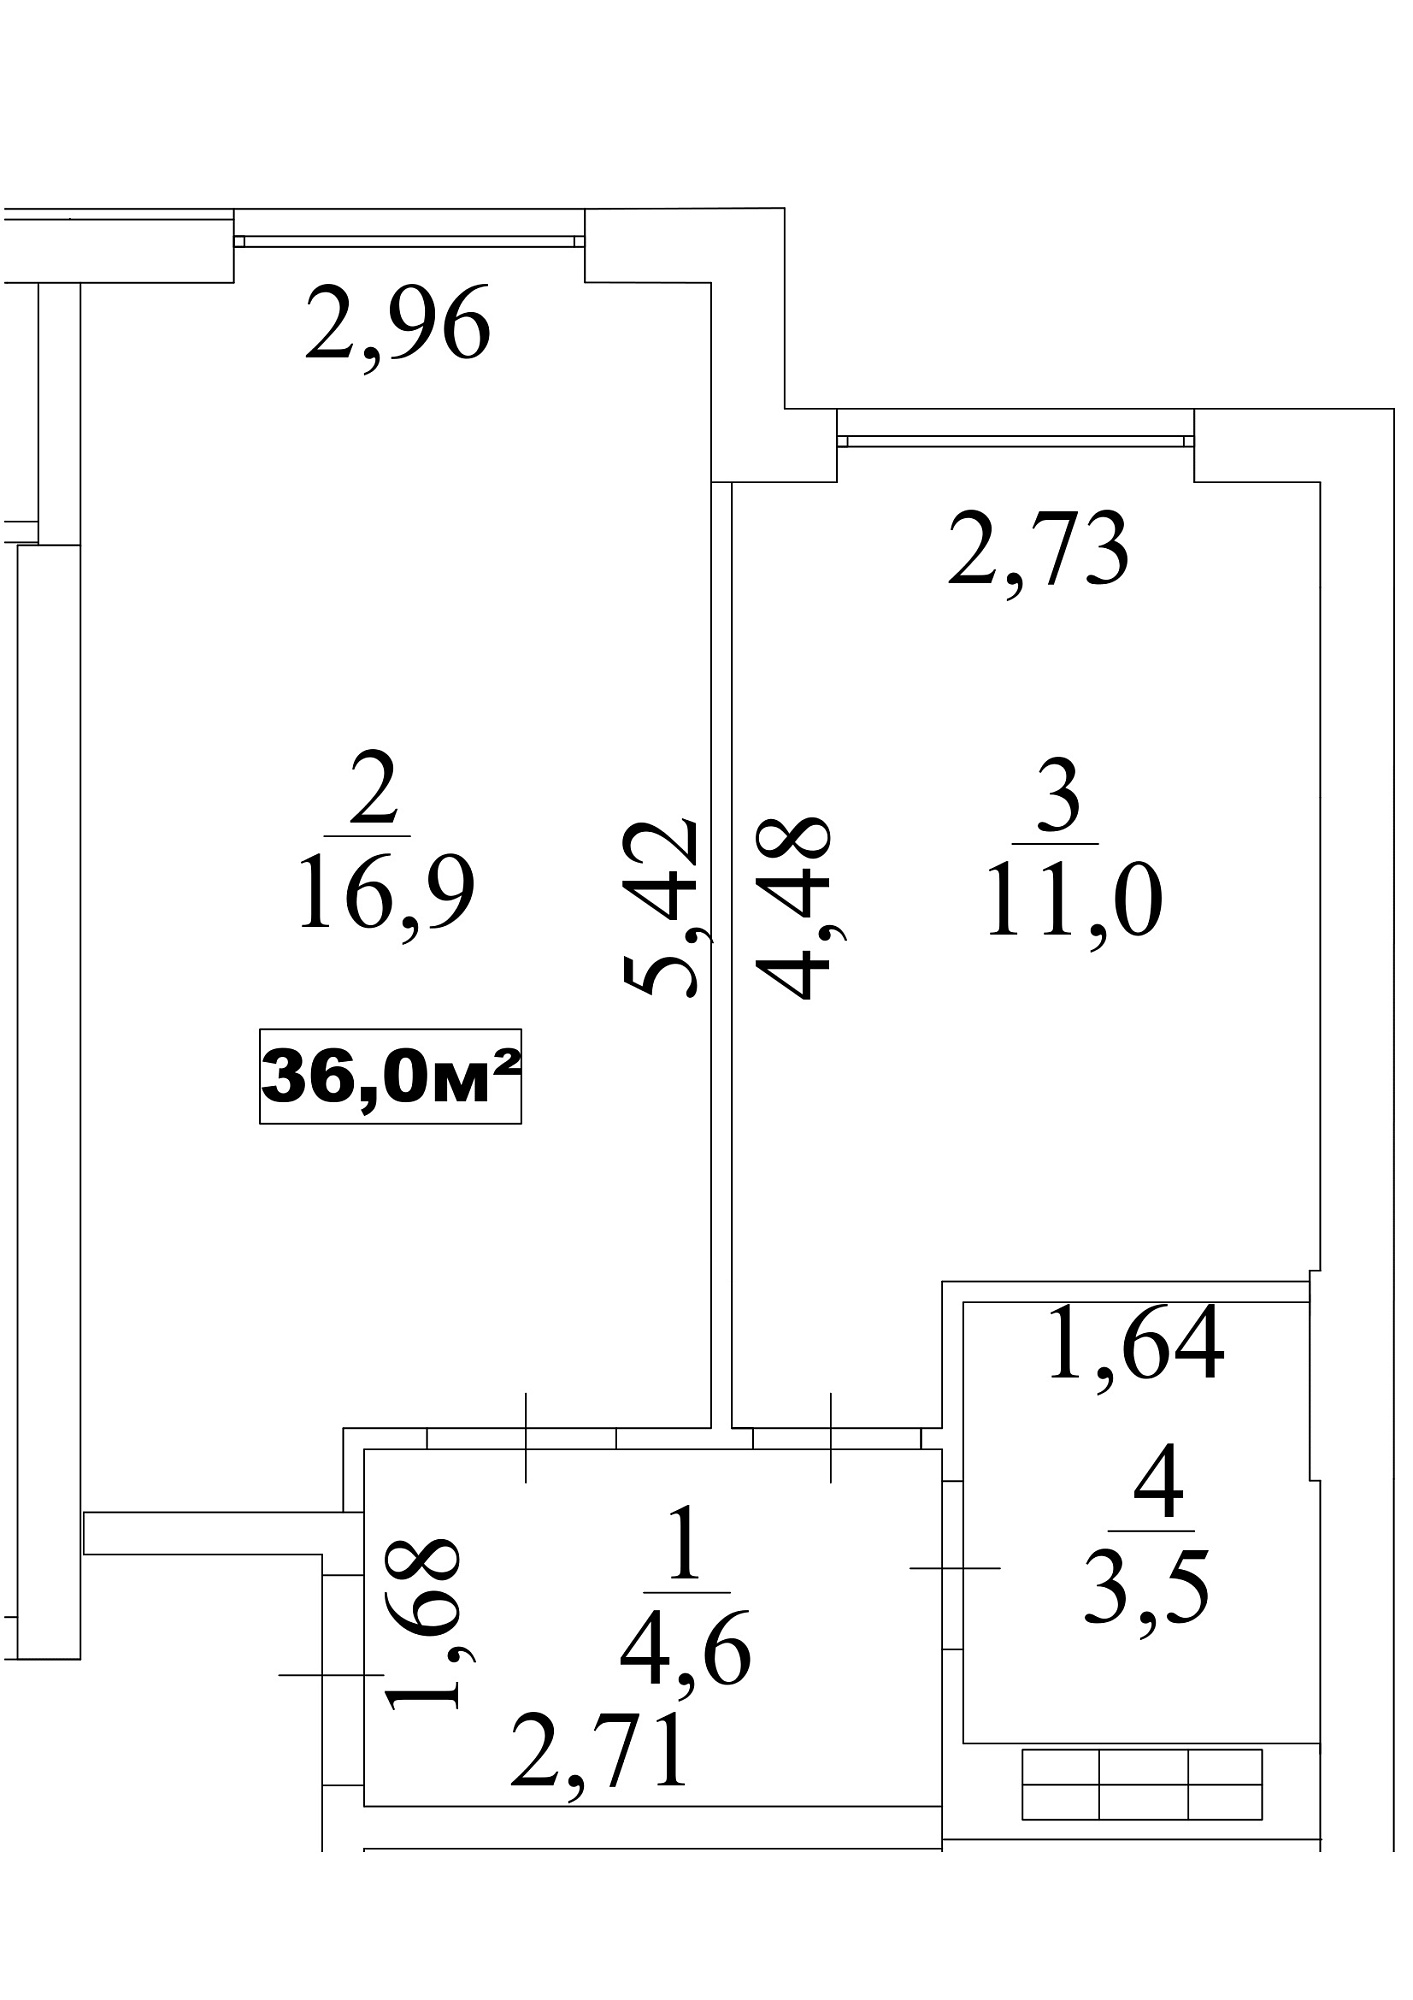 Планировка 1-к квартира площей 36м2, AB-10-07/0061б.